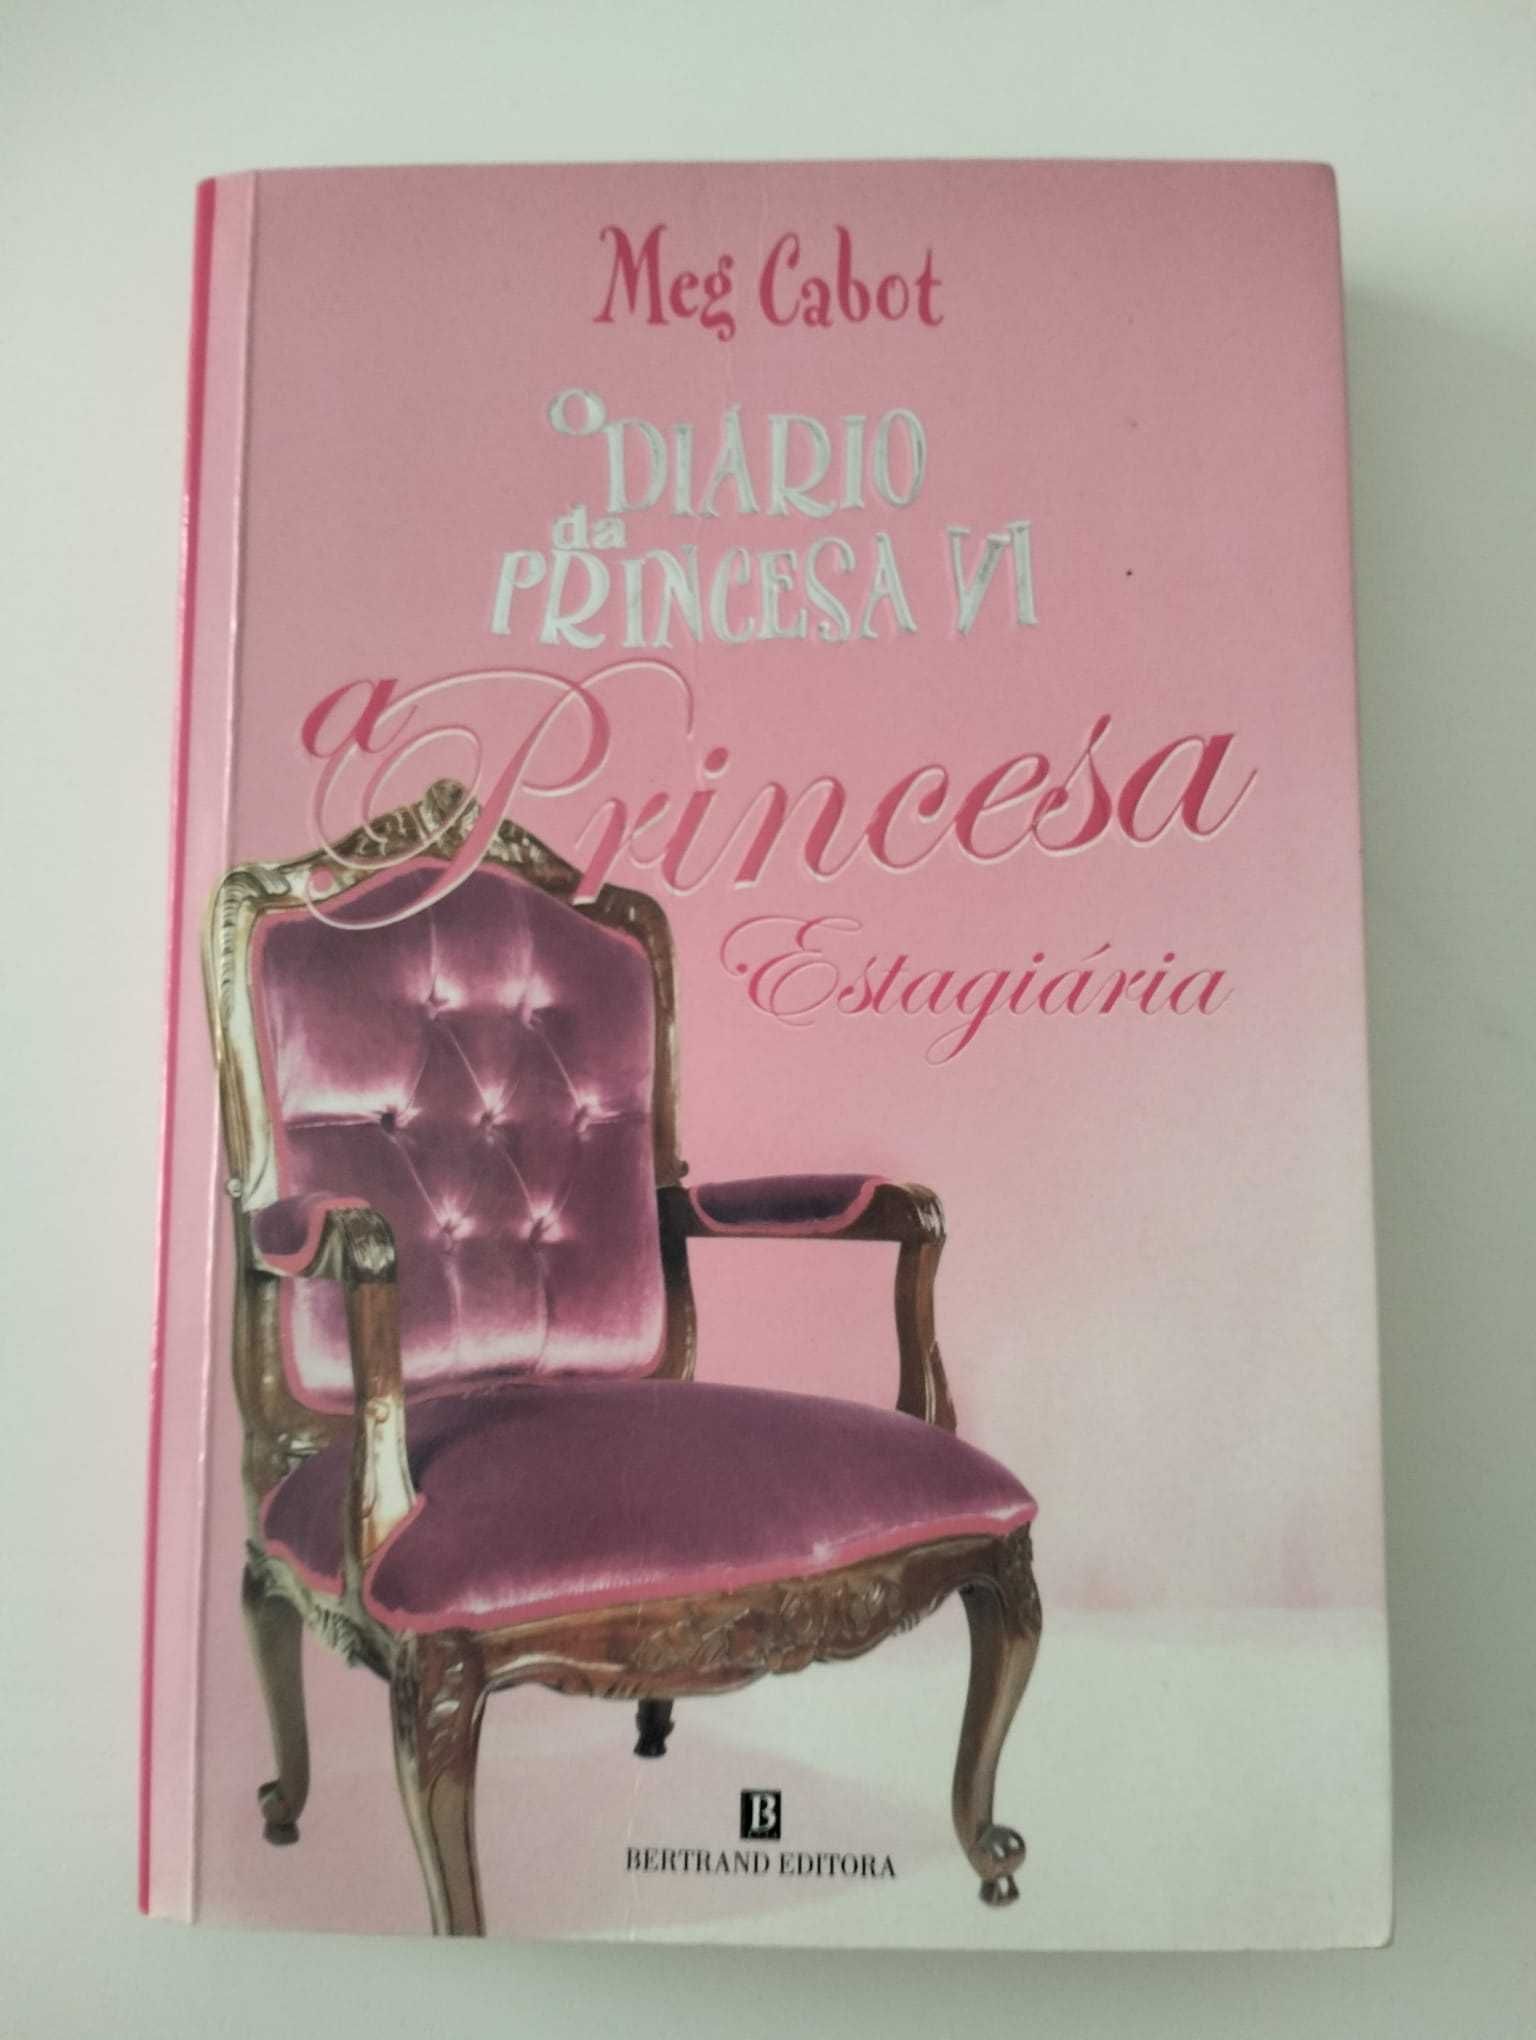 Livro "O Diário da Princesa VI - A Princesa Estagiária" - Meg Cabot